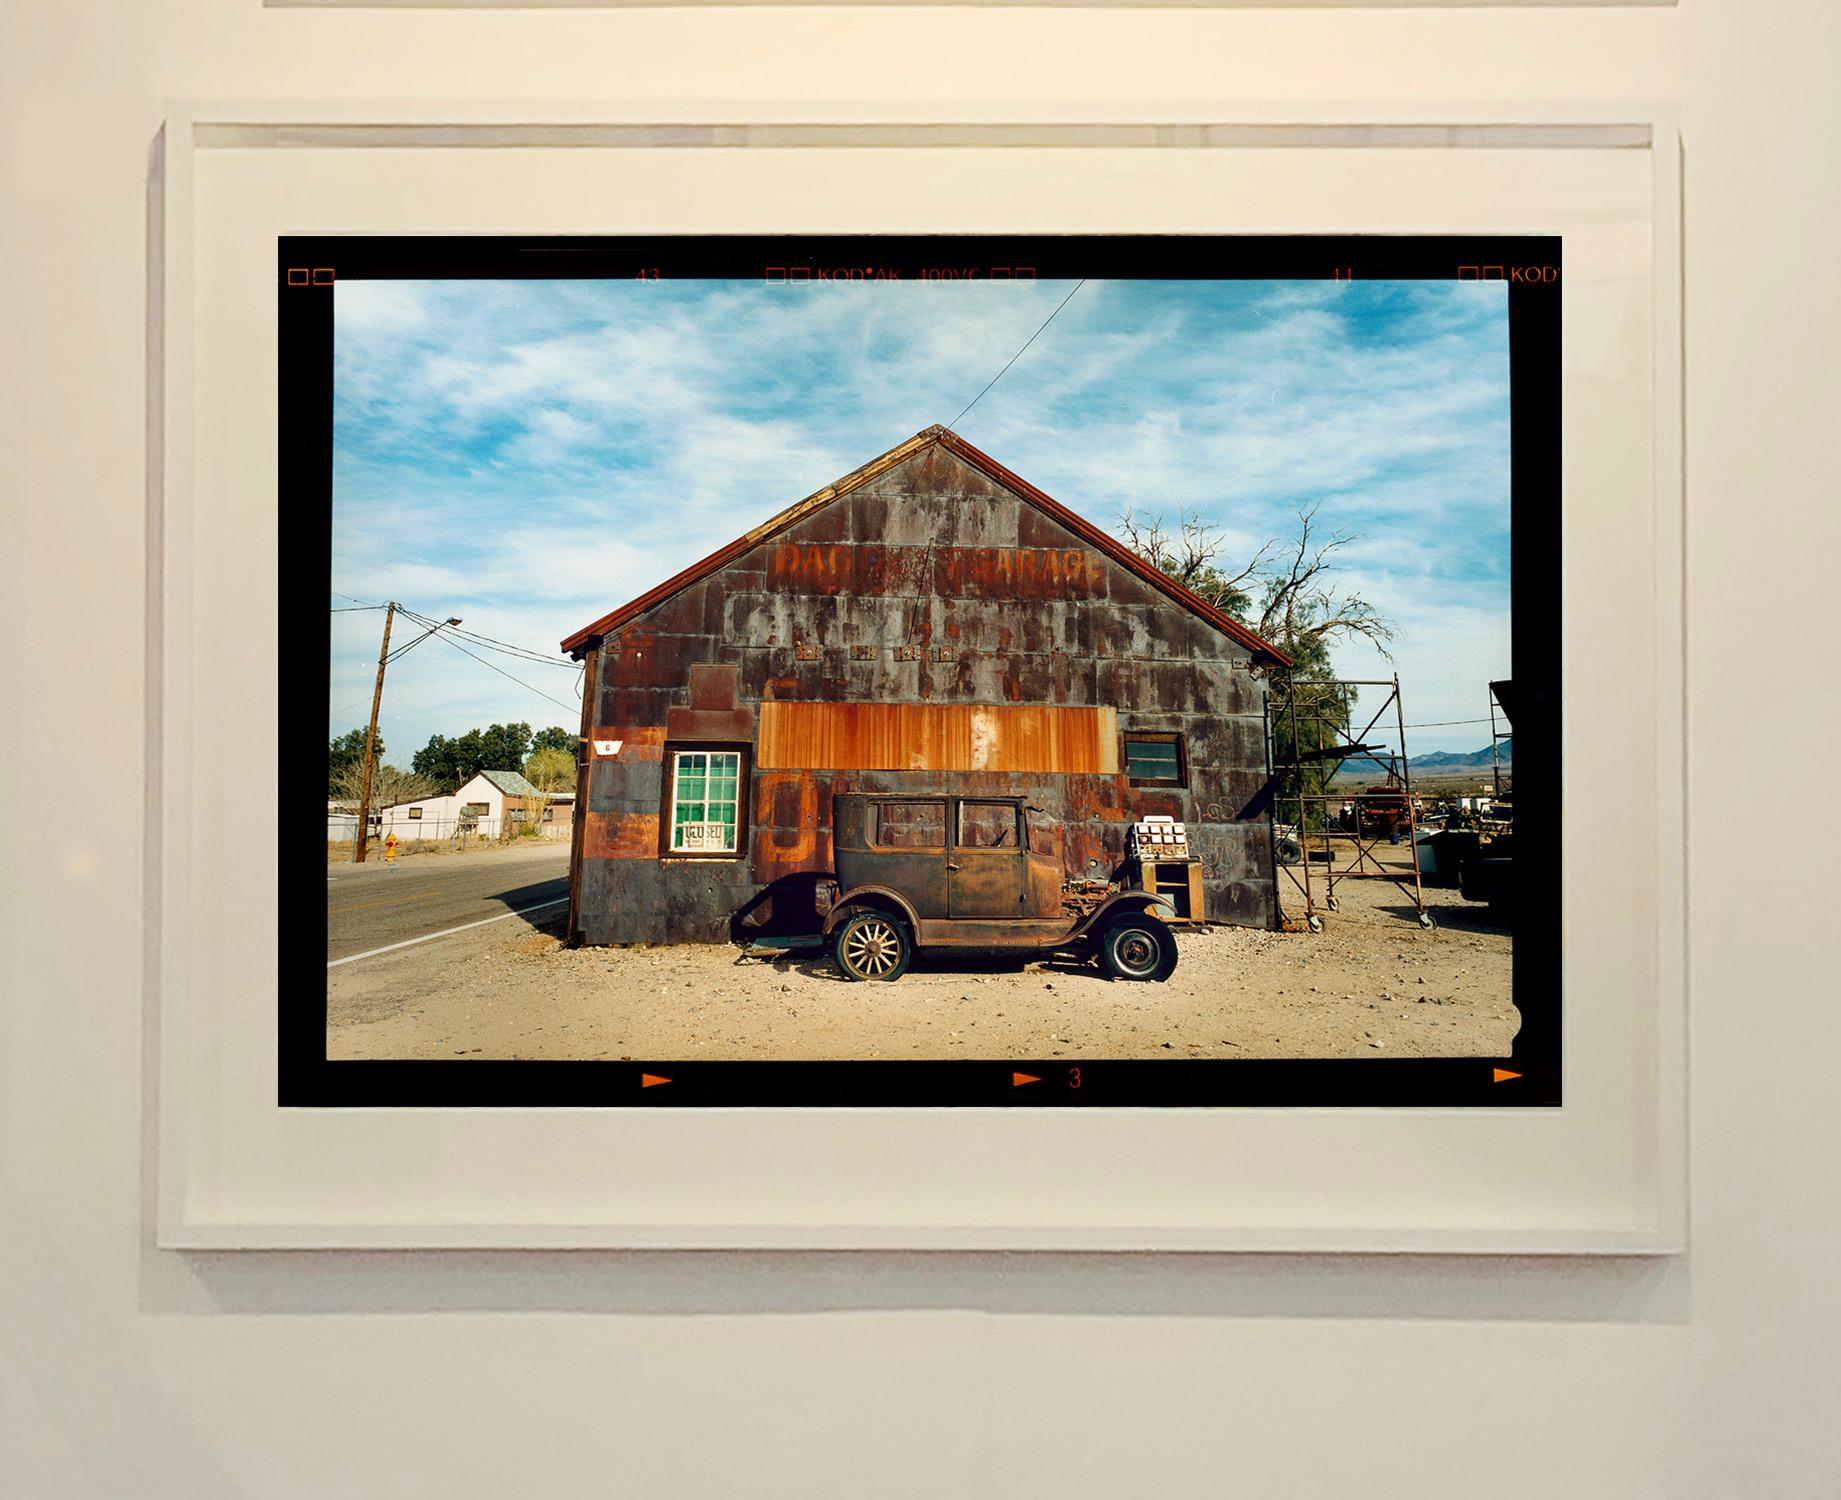 Modell T und Garage, Daggett, Kalifornien – Farbfotografie (Zeitgenössisch), Photograph, von Richard Heeps